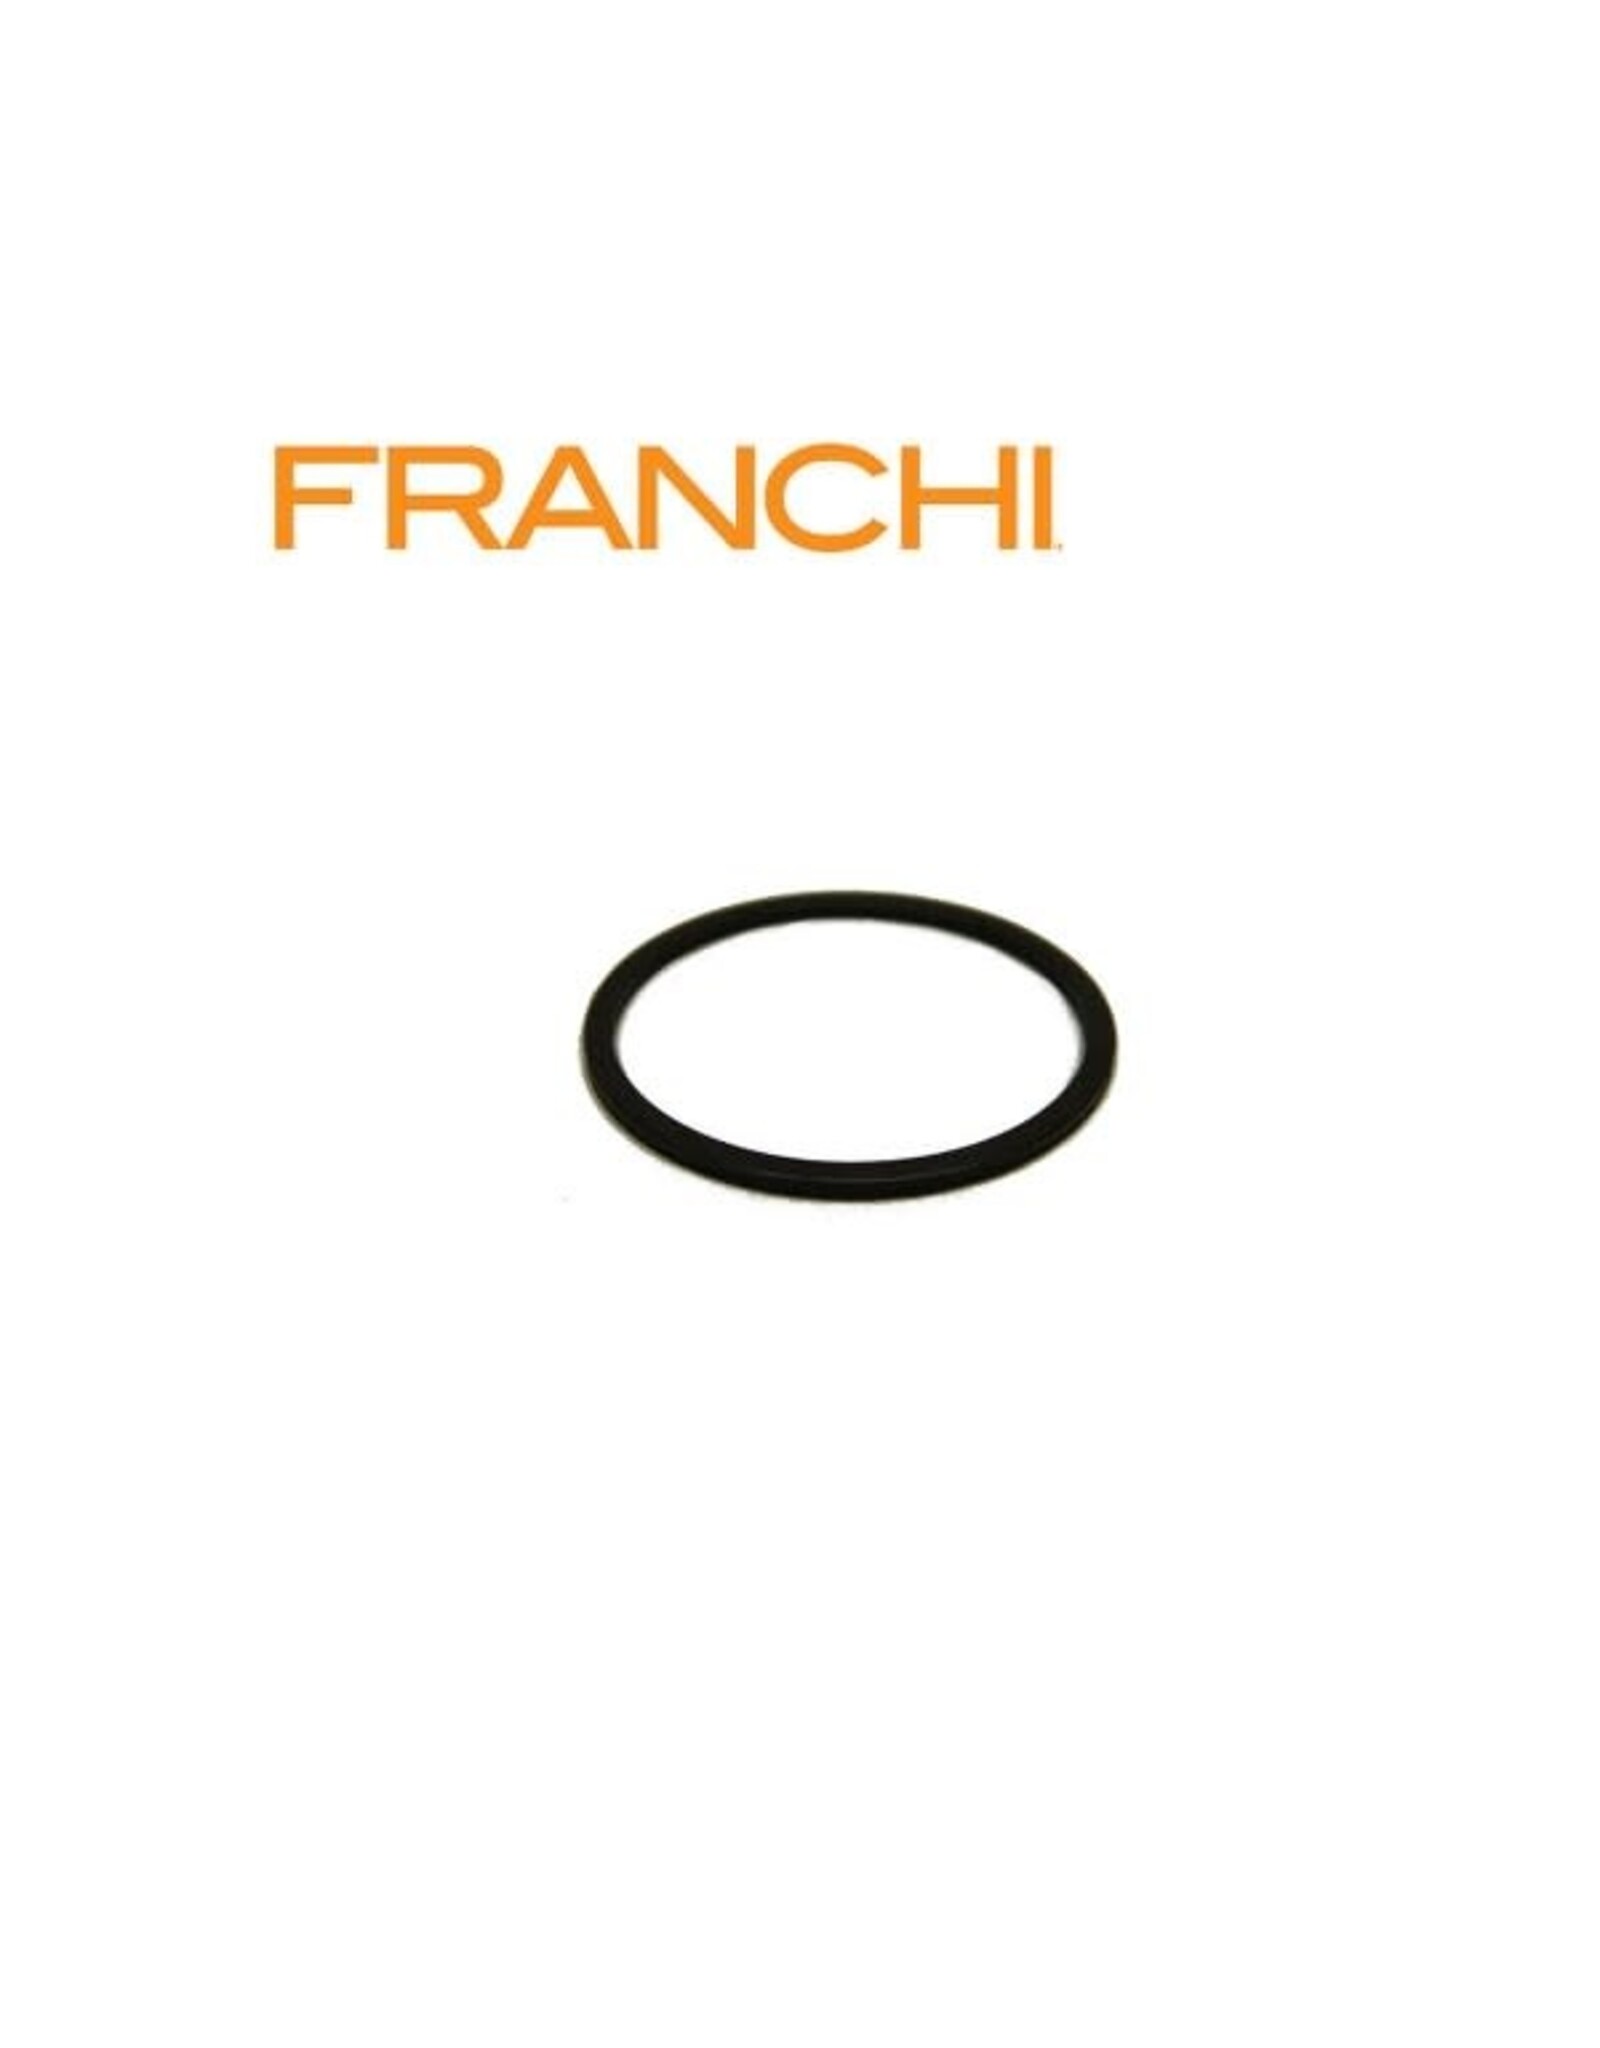 Franchi: Affinity/I-12/Intensity - 12 Gauge -For-end Flat Washer